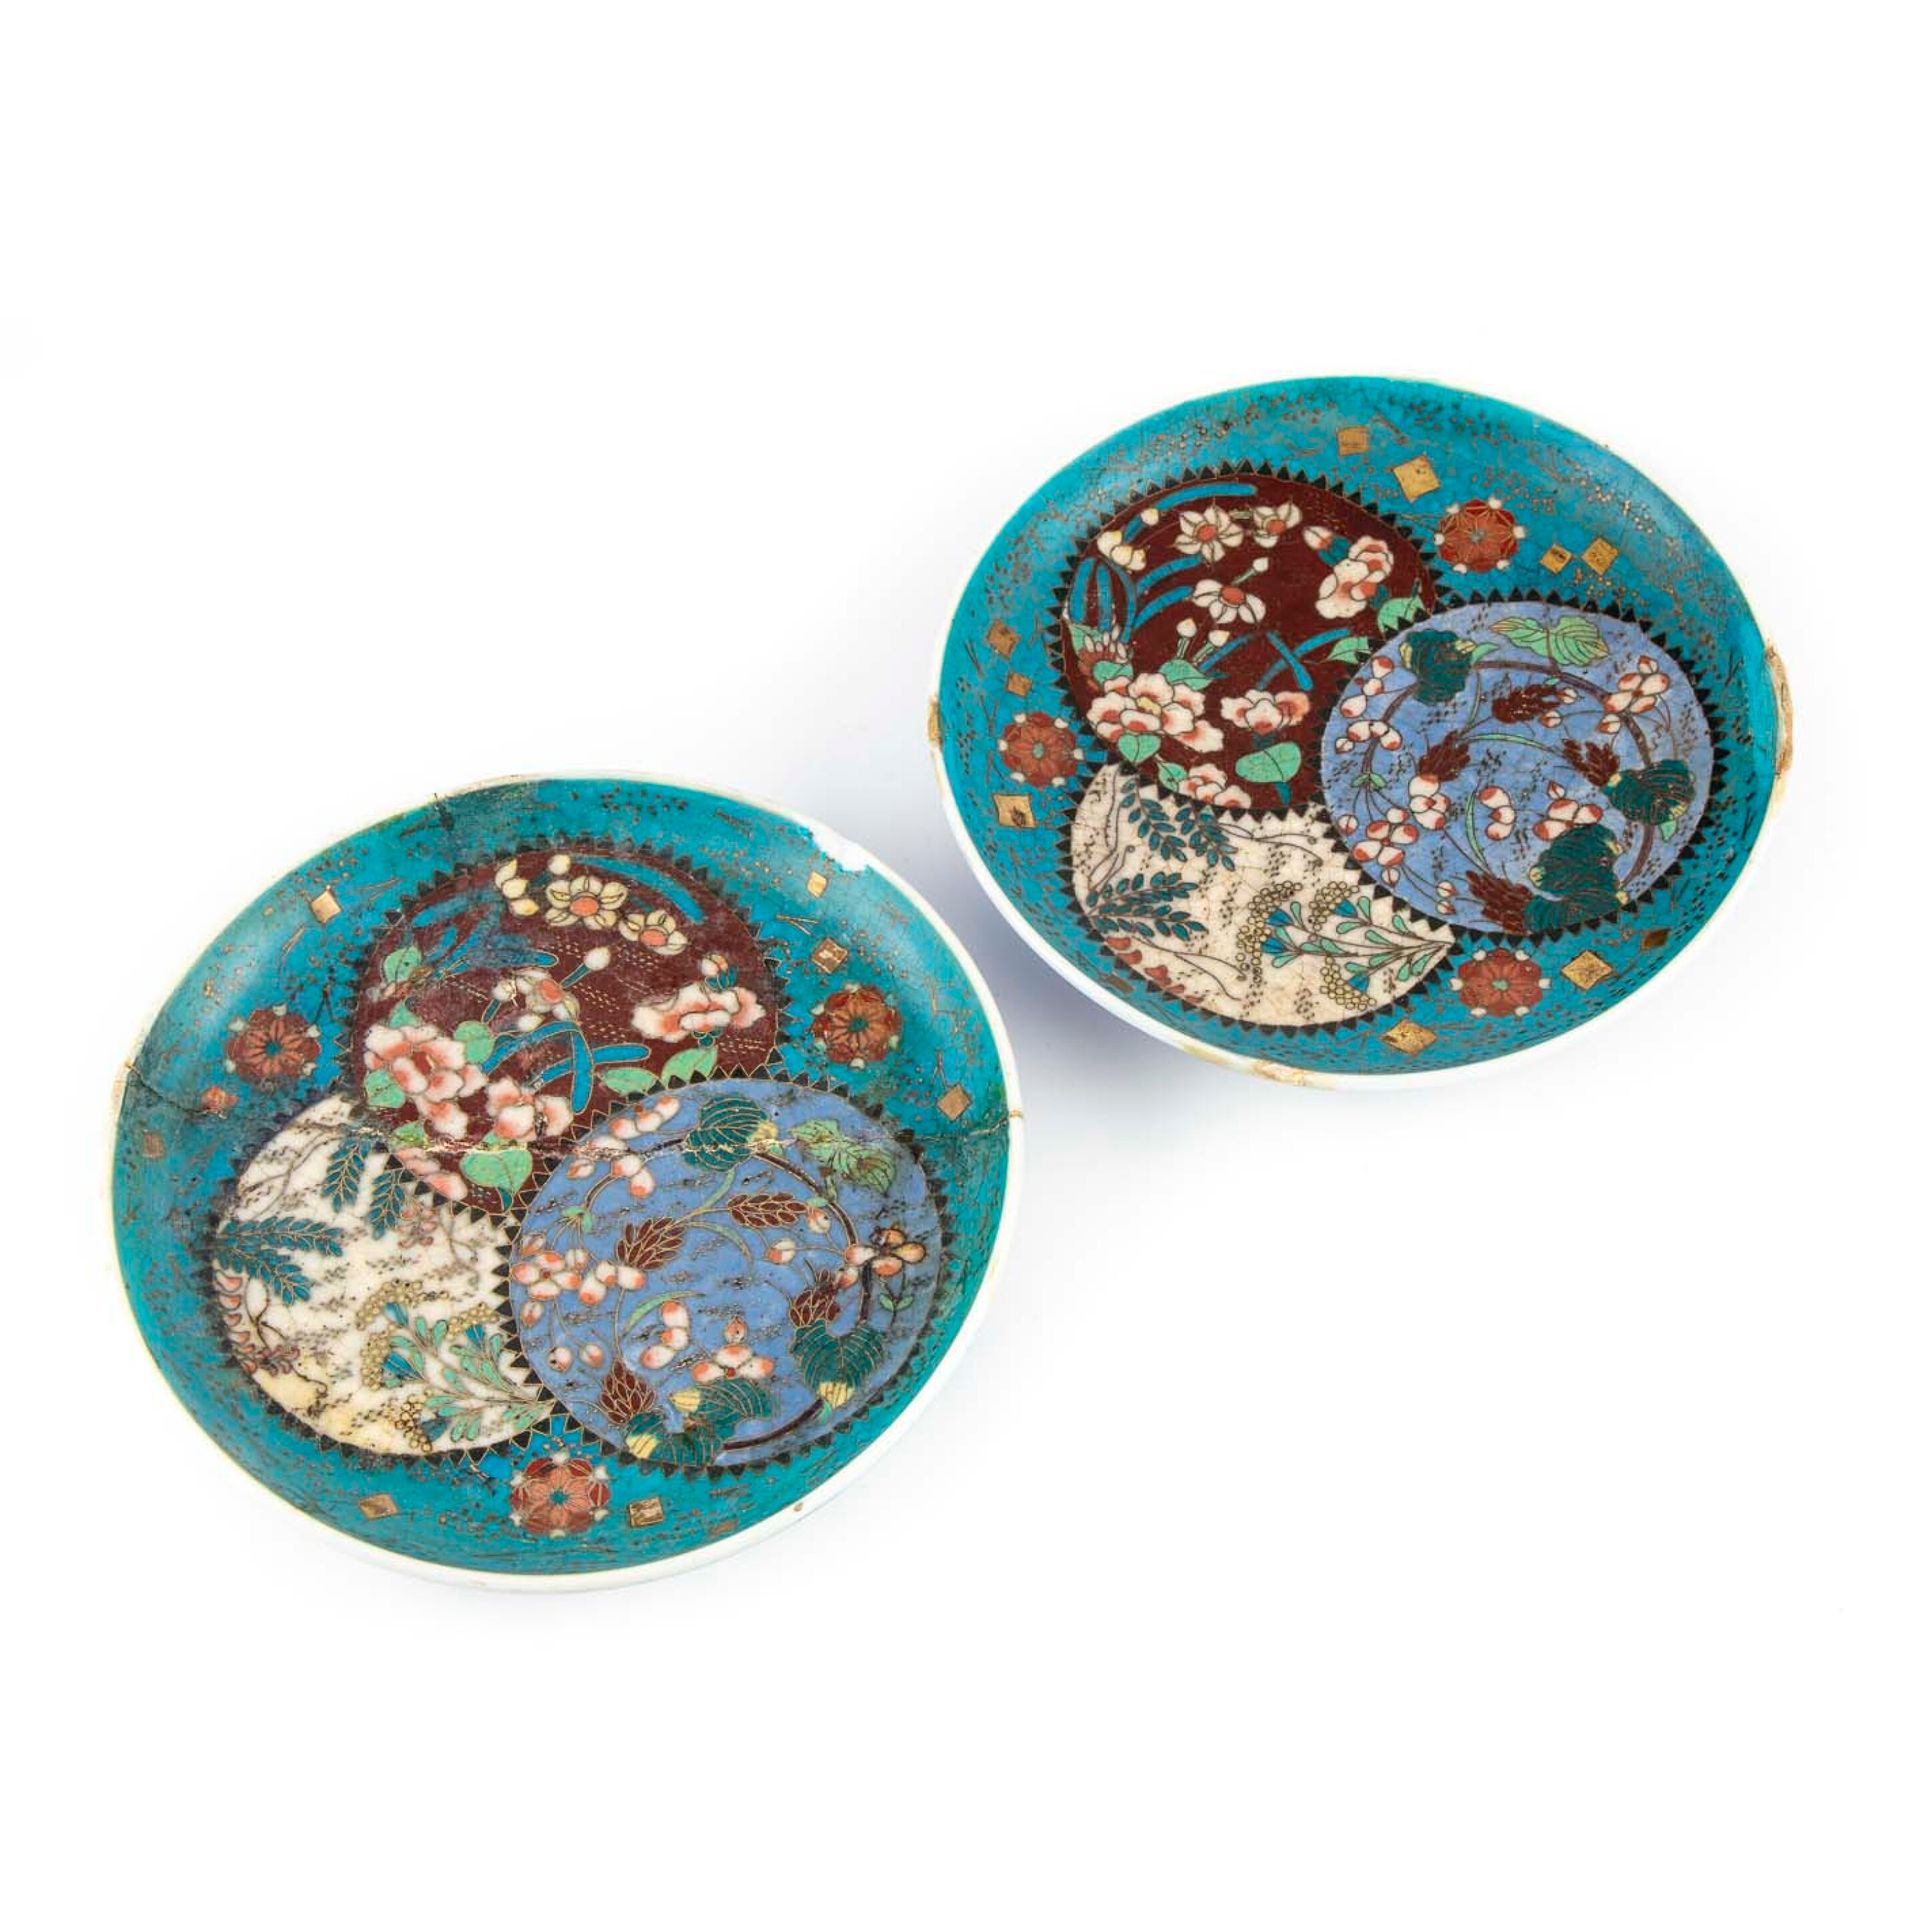 CHINE CINA (?)

Coppia di piccoli piatti in porcellana con intarsi in metallo in&hellip;